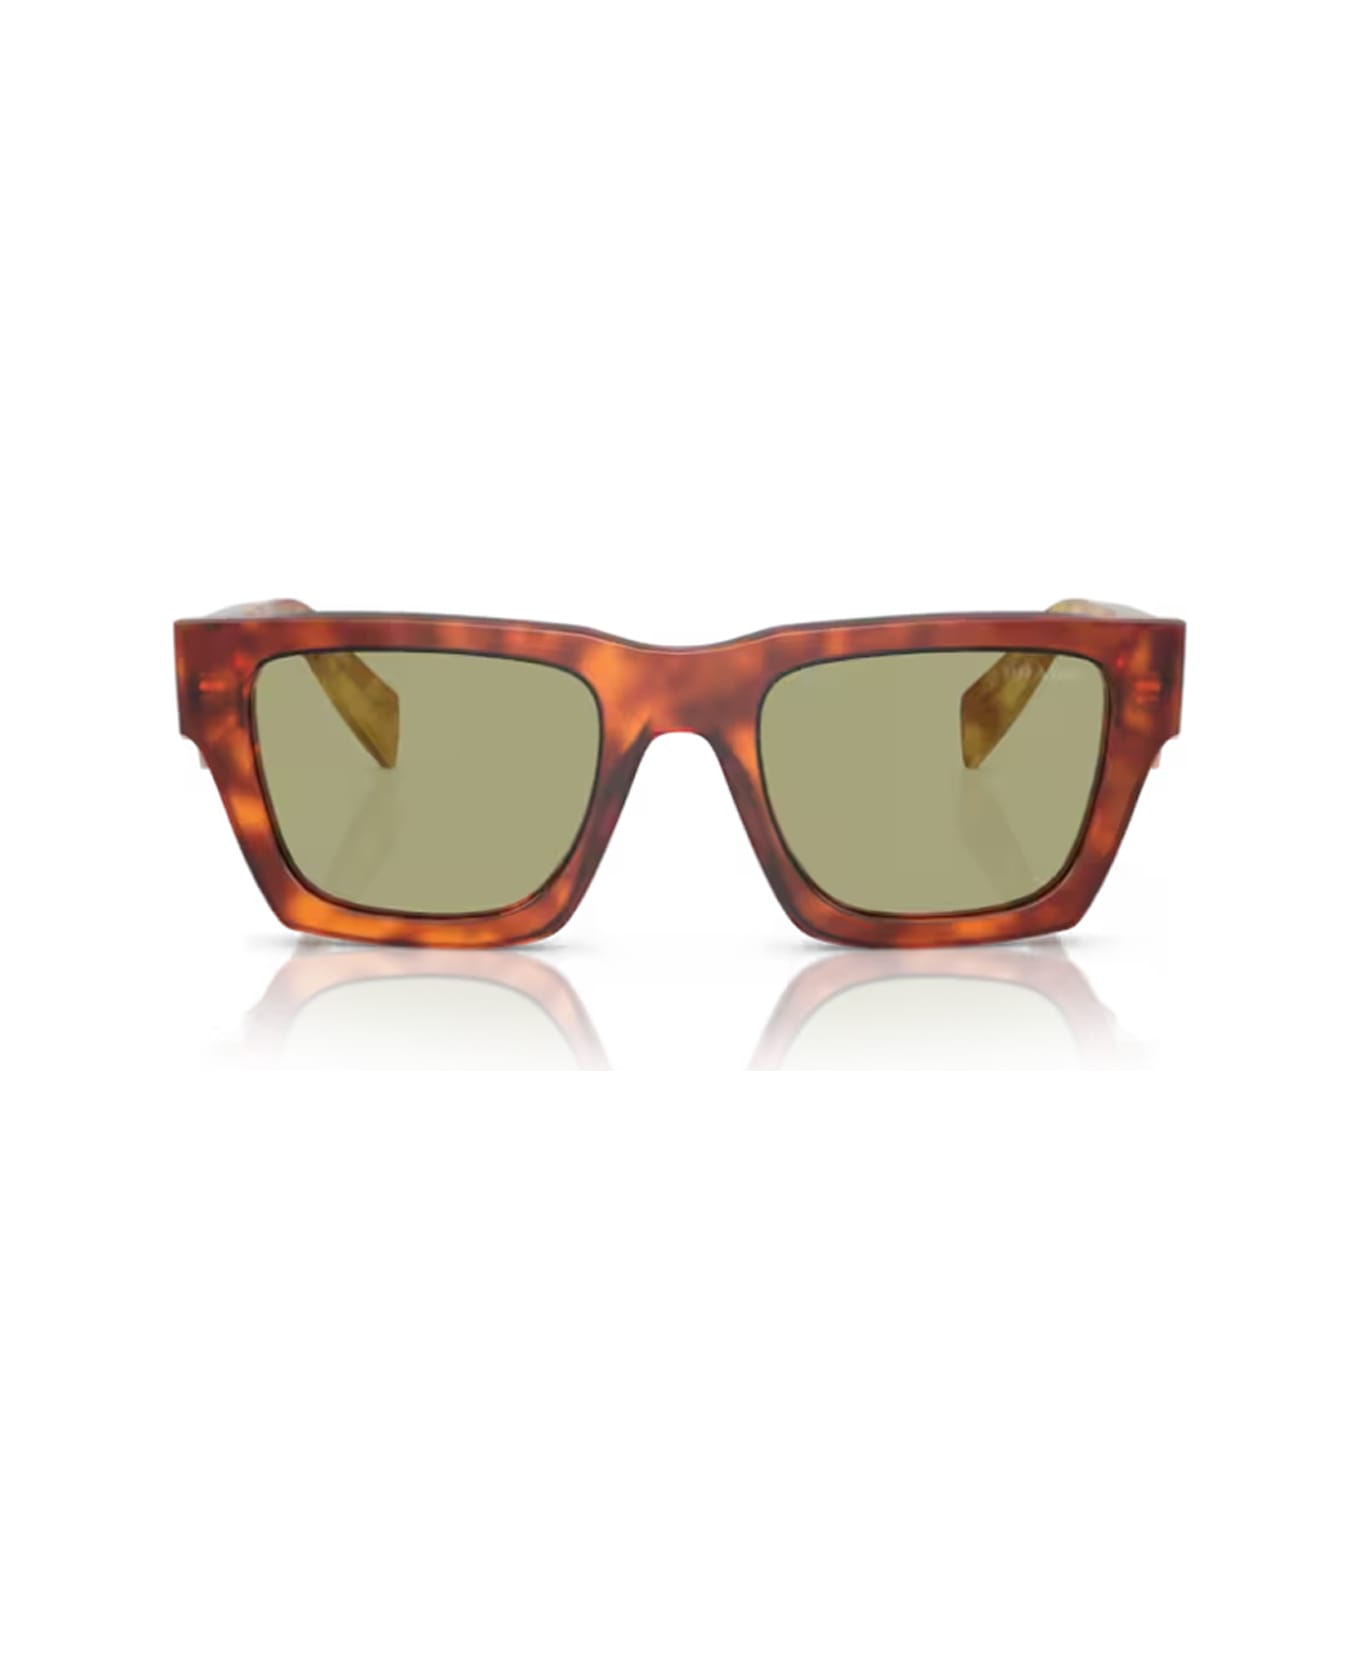 Prada Eyewear Pra06s 11p60c Sunglasses - Arancione